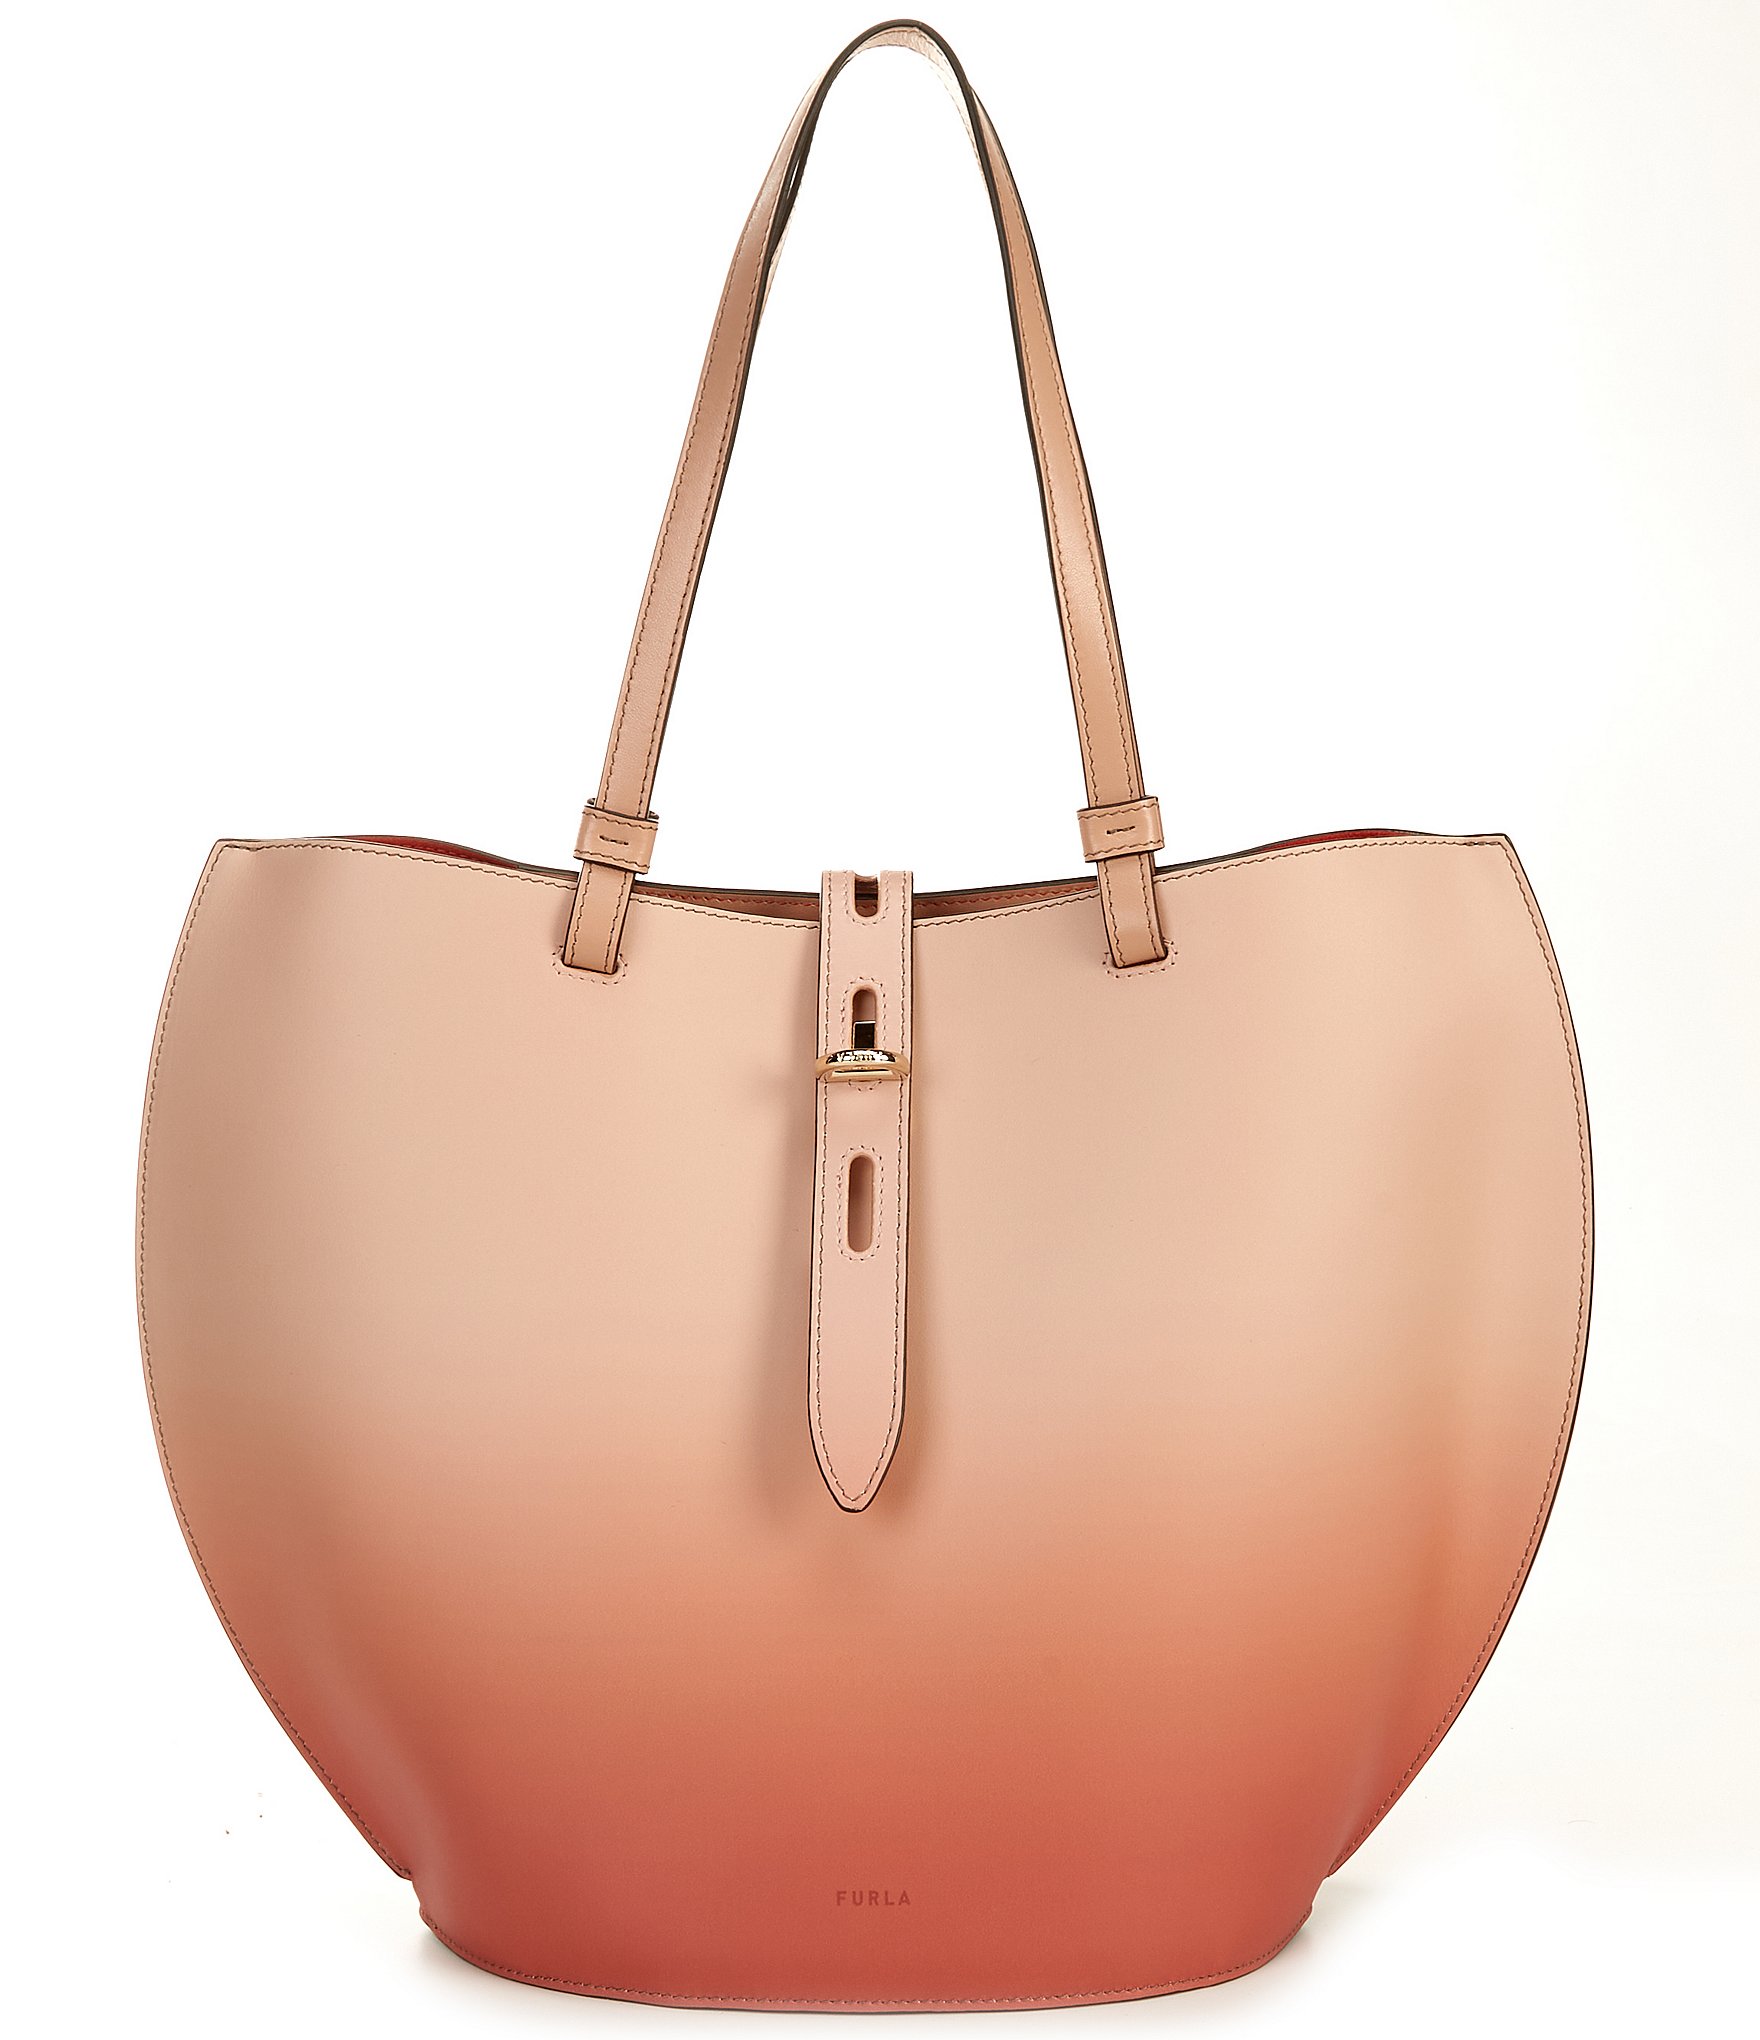 Furla Brown Leather X-Large Tote Shoulder Bag